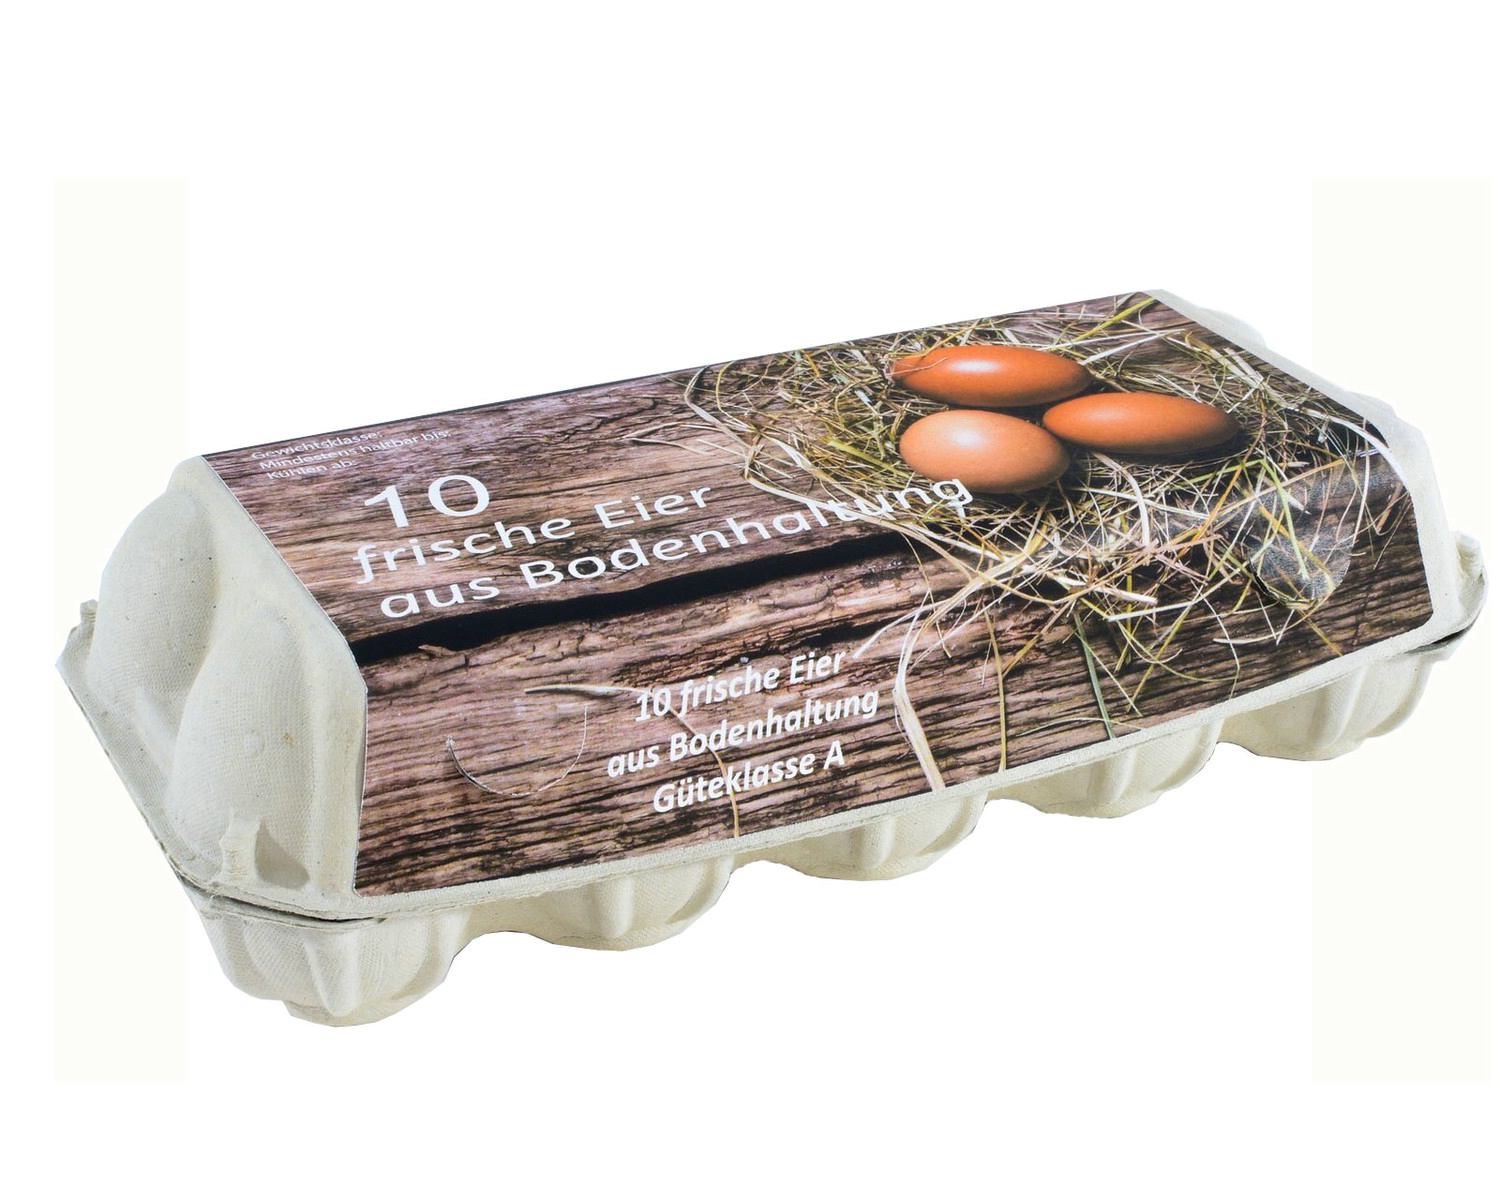 Stabile Eierschachteln aus Styropor für 10 Hühnereier • hygienische Eierpappen • Eierkartons • Eierbox • Eierverpackung • sicherer Transport für Rohe Eier • Ei • Einweg • Mehrweg 